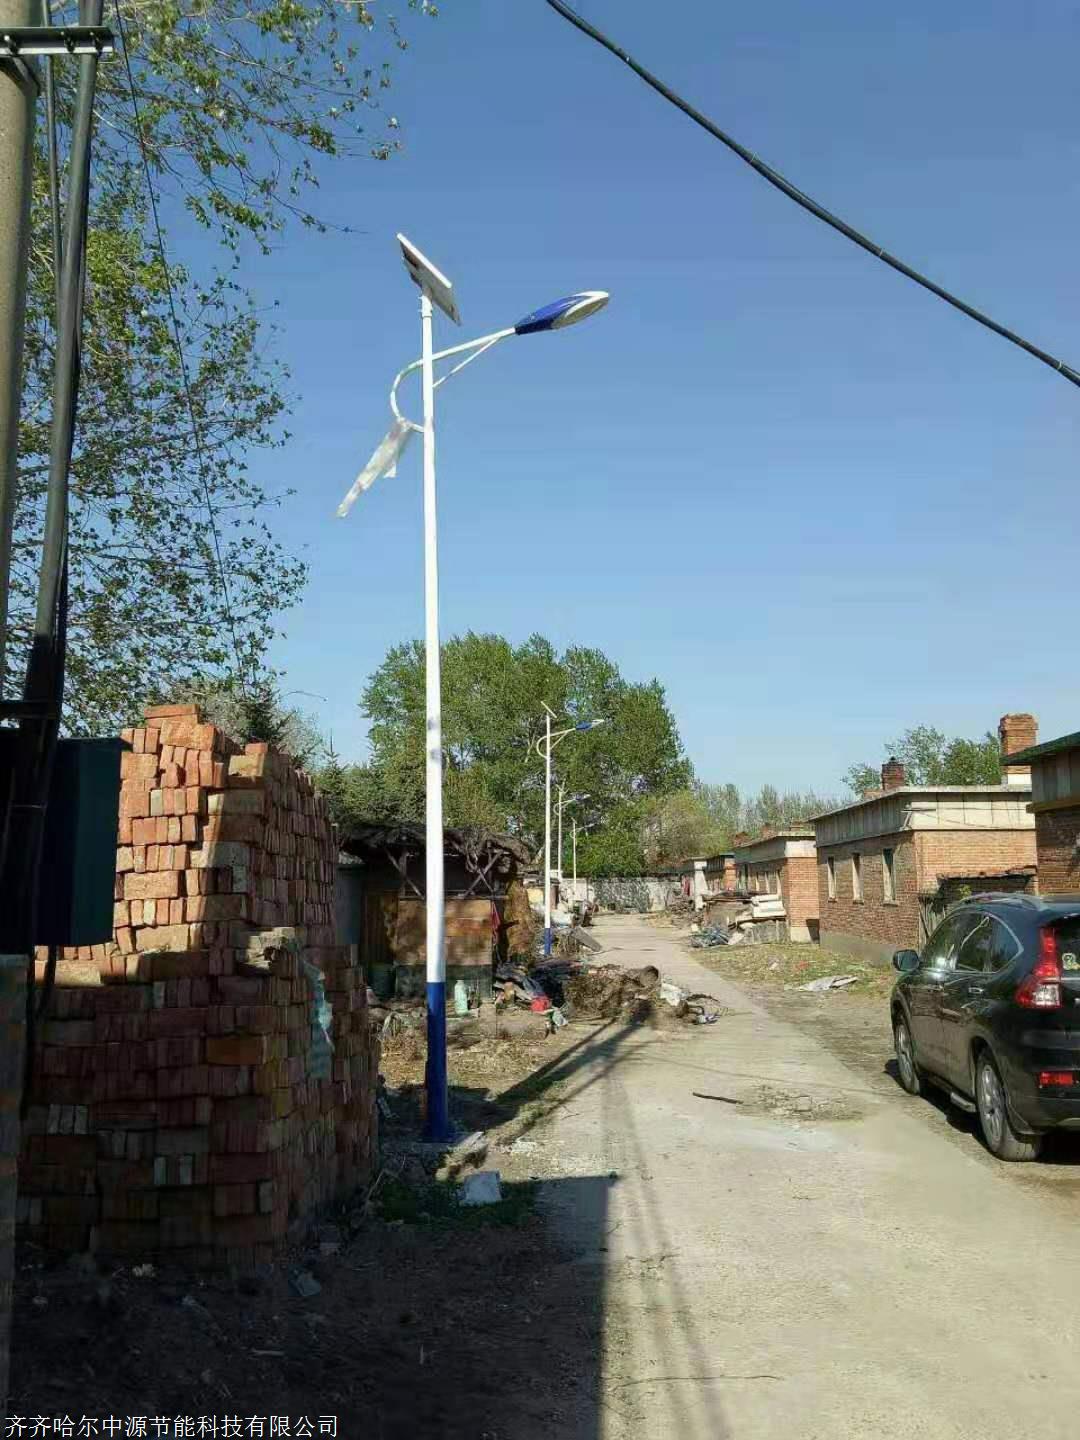 哈尔滨太阳能路灯 厂家现有6米高存货供应 价格低 管壁厚 结实耐用